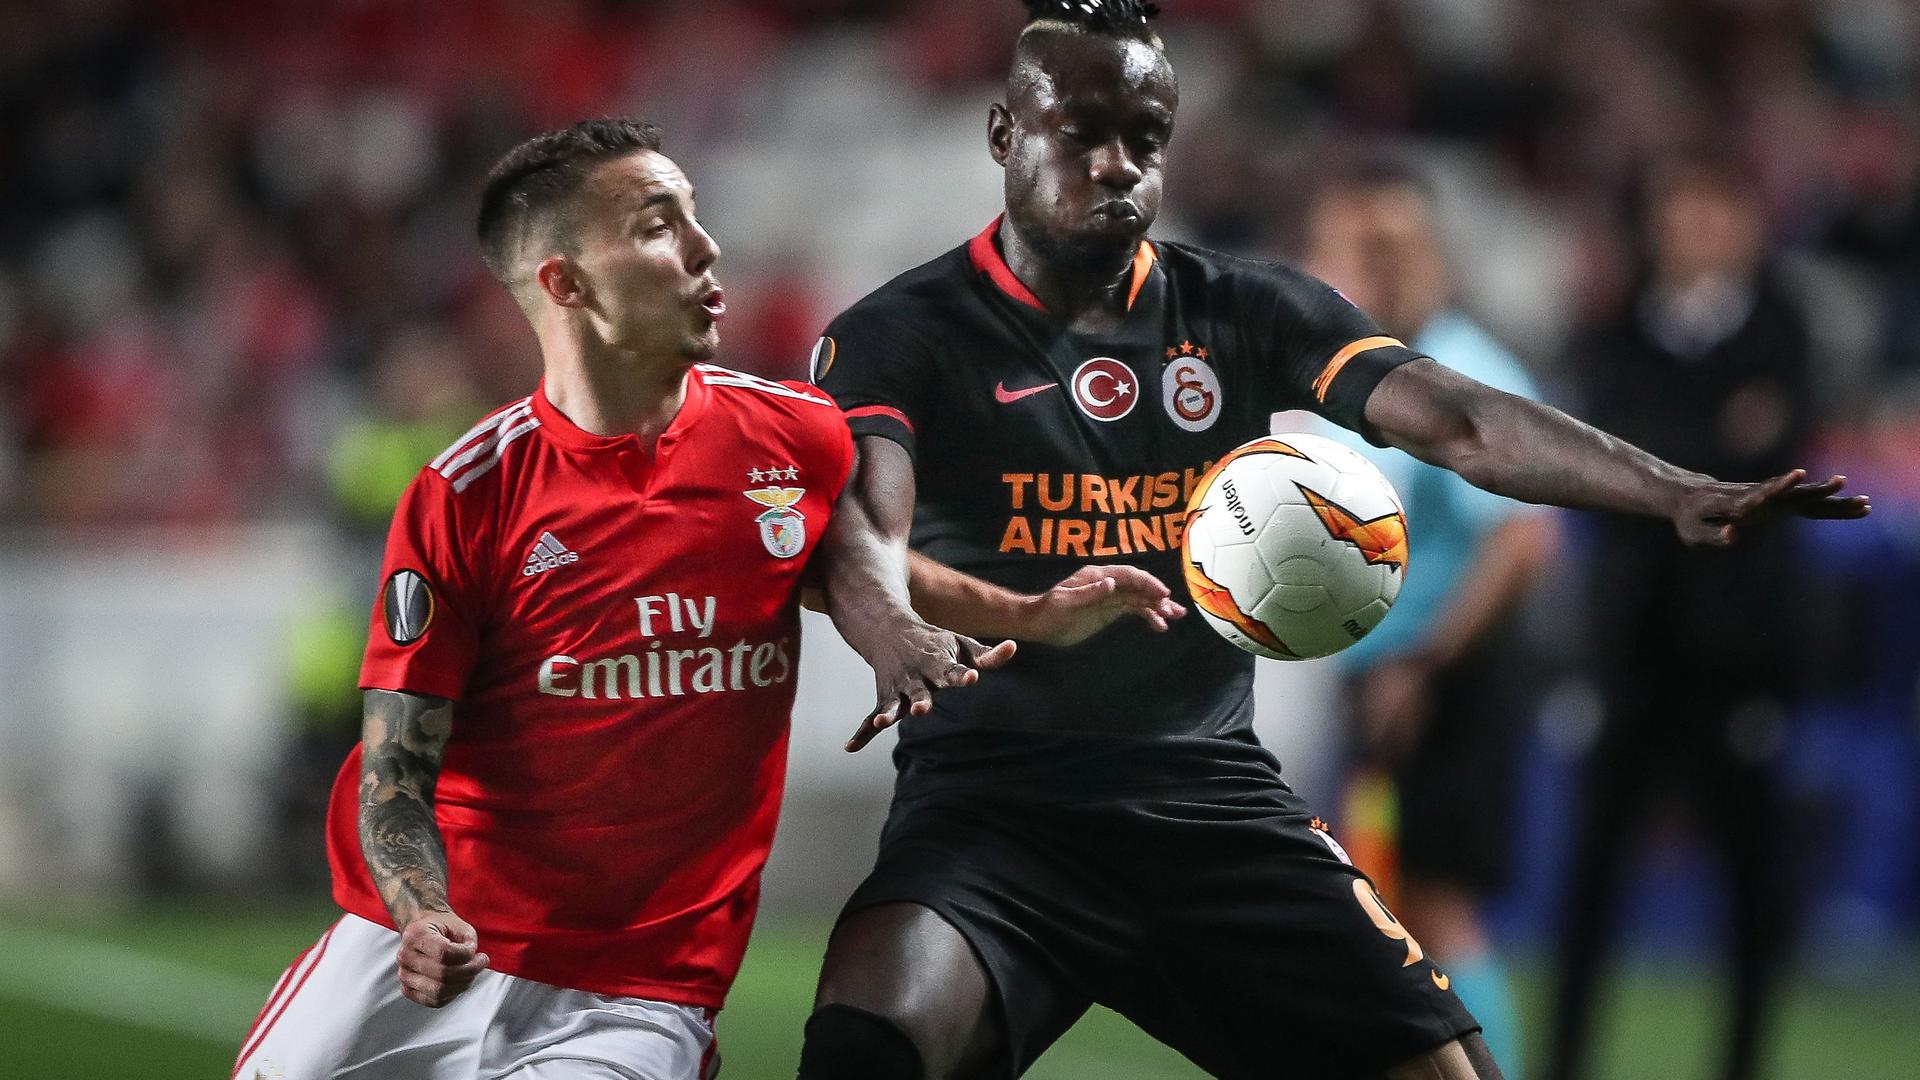 A equipa de Bruno Lage eliminou a formação turca graças ao triunfo por 2-1 na Turquia, na primeira mão, com golos de Salvio e Seferovic. 